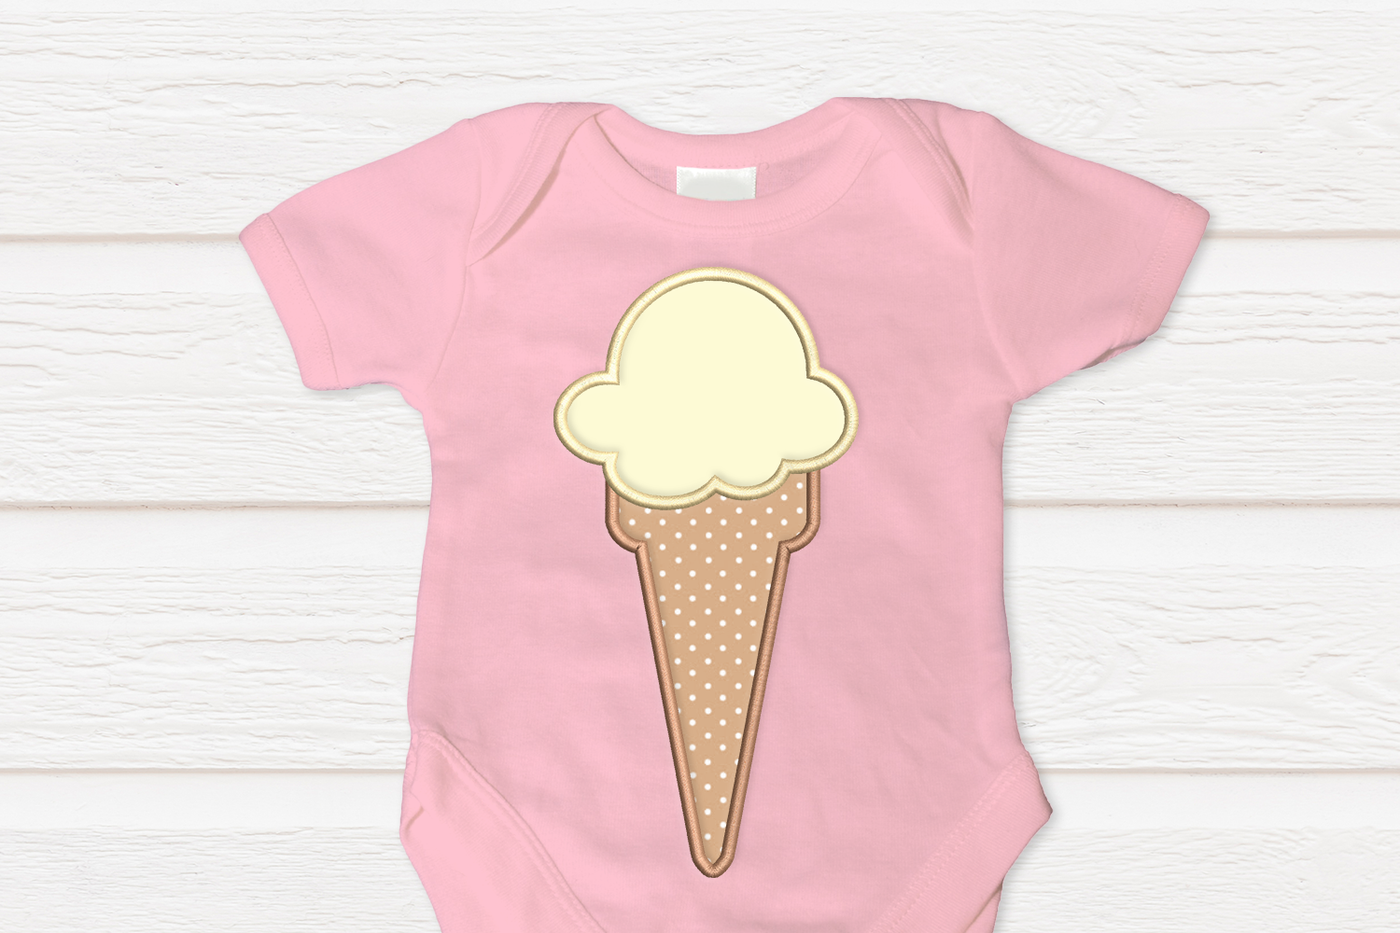 Ice cream cone applique